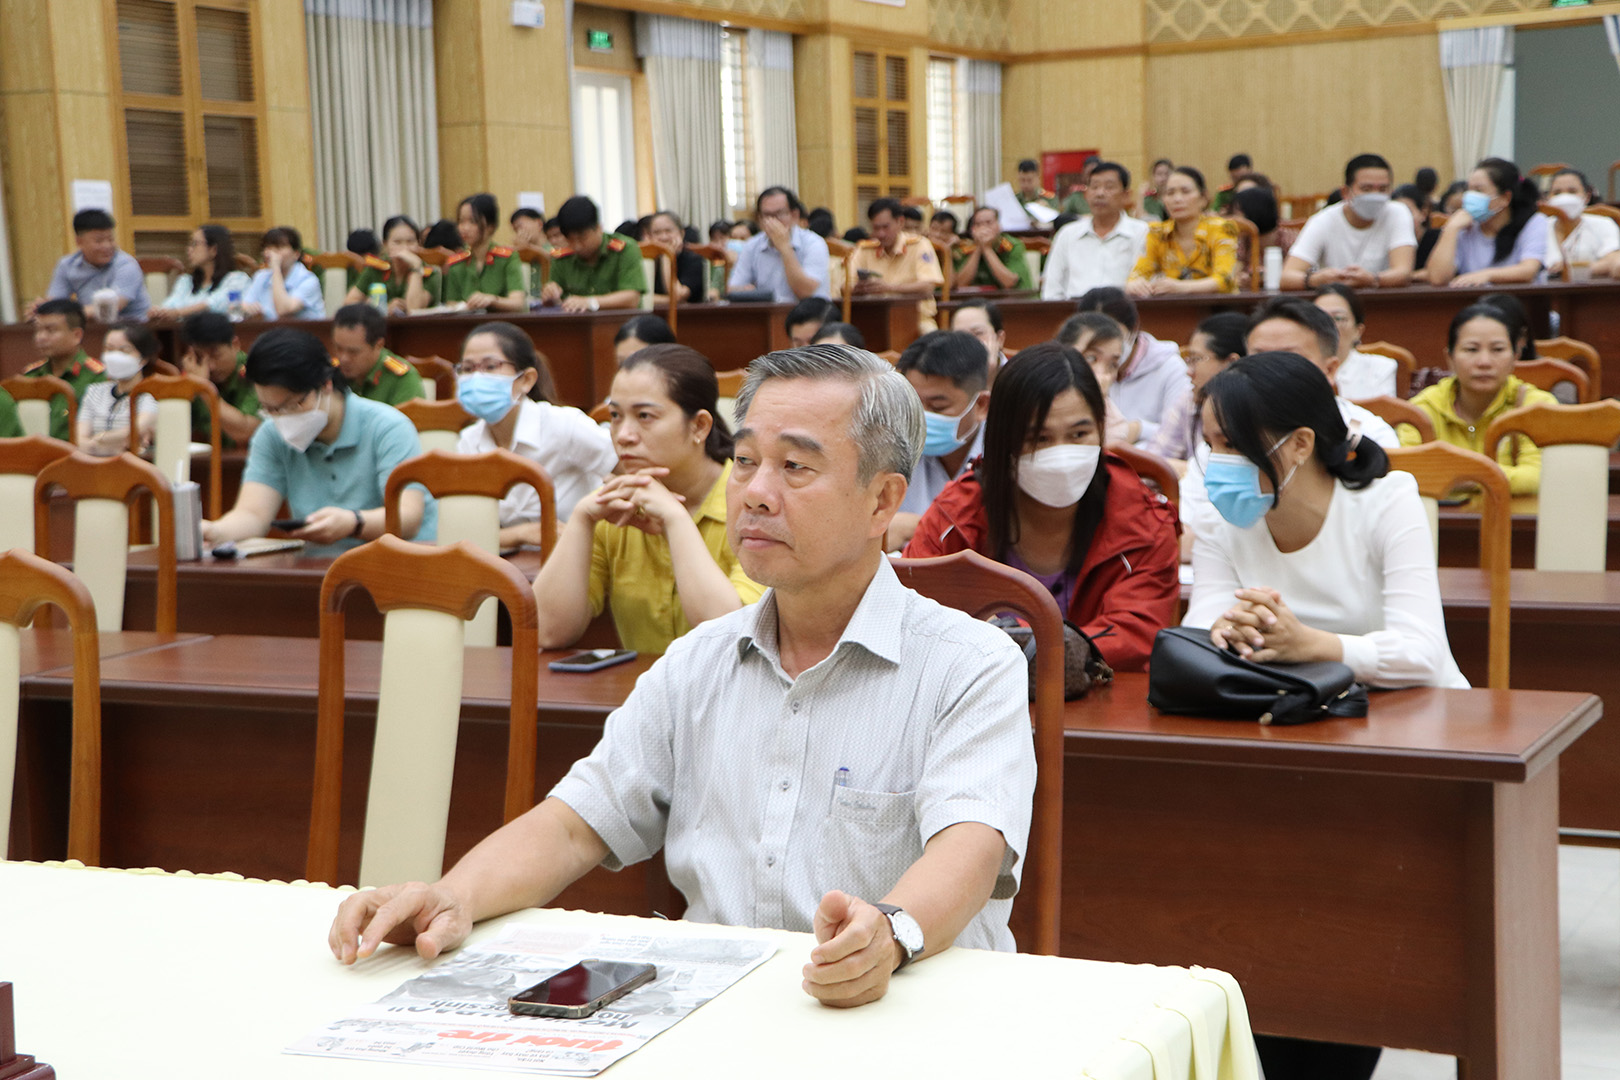 Ông Võ Hữu Hạnh, Phó Bí thư Thường trực Huyện ủy và các đảng viên tham gia buổi quán triệt.